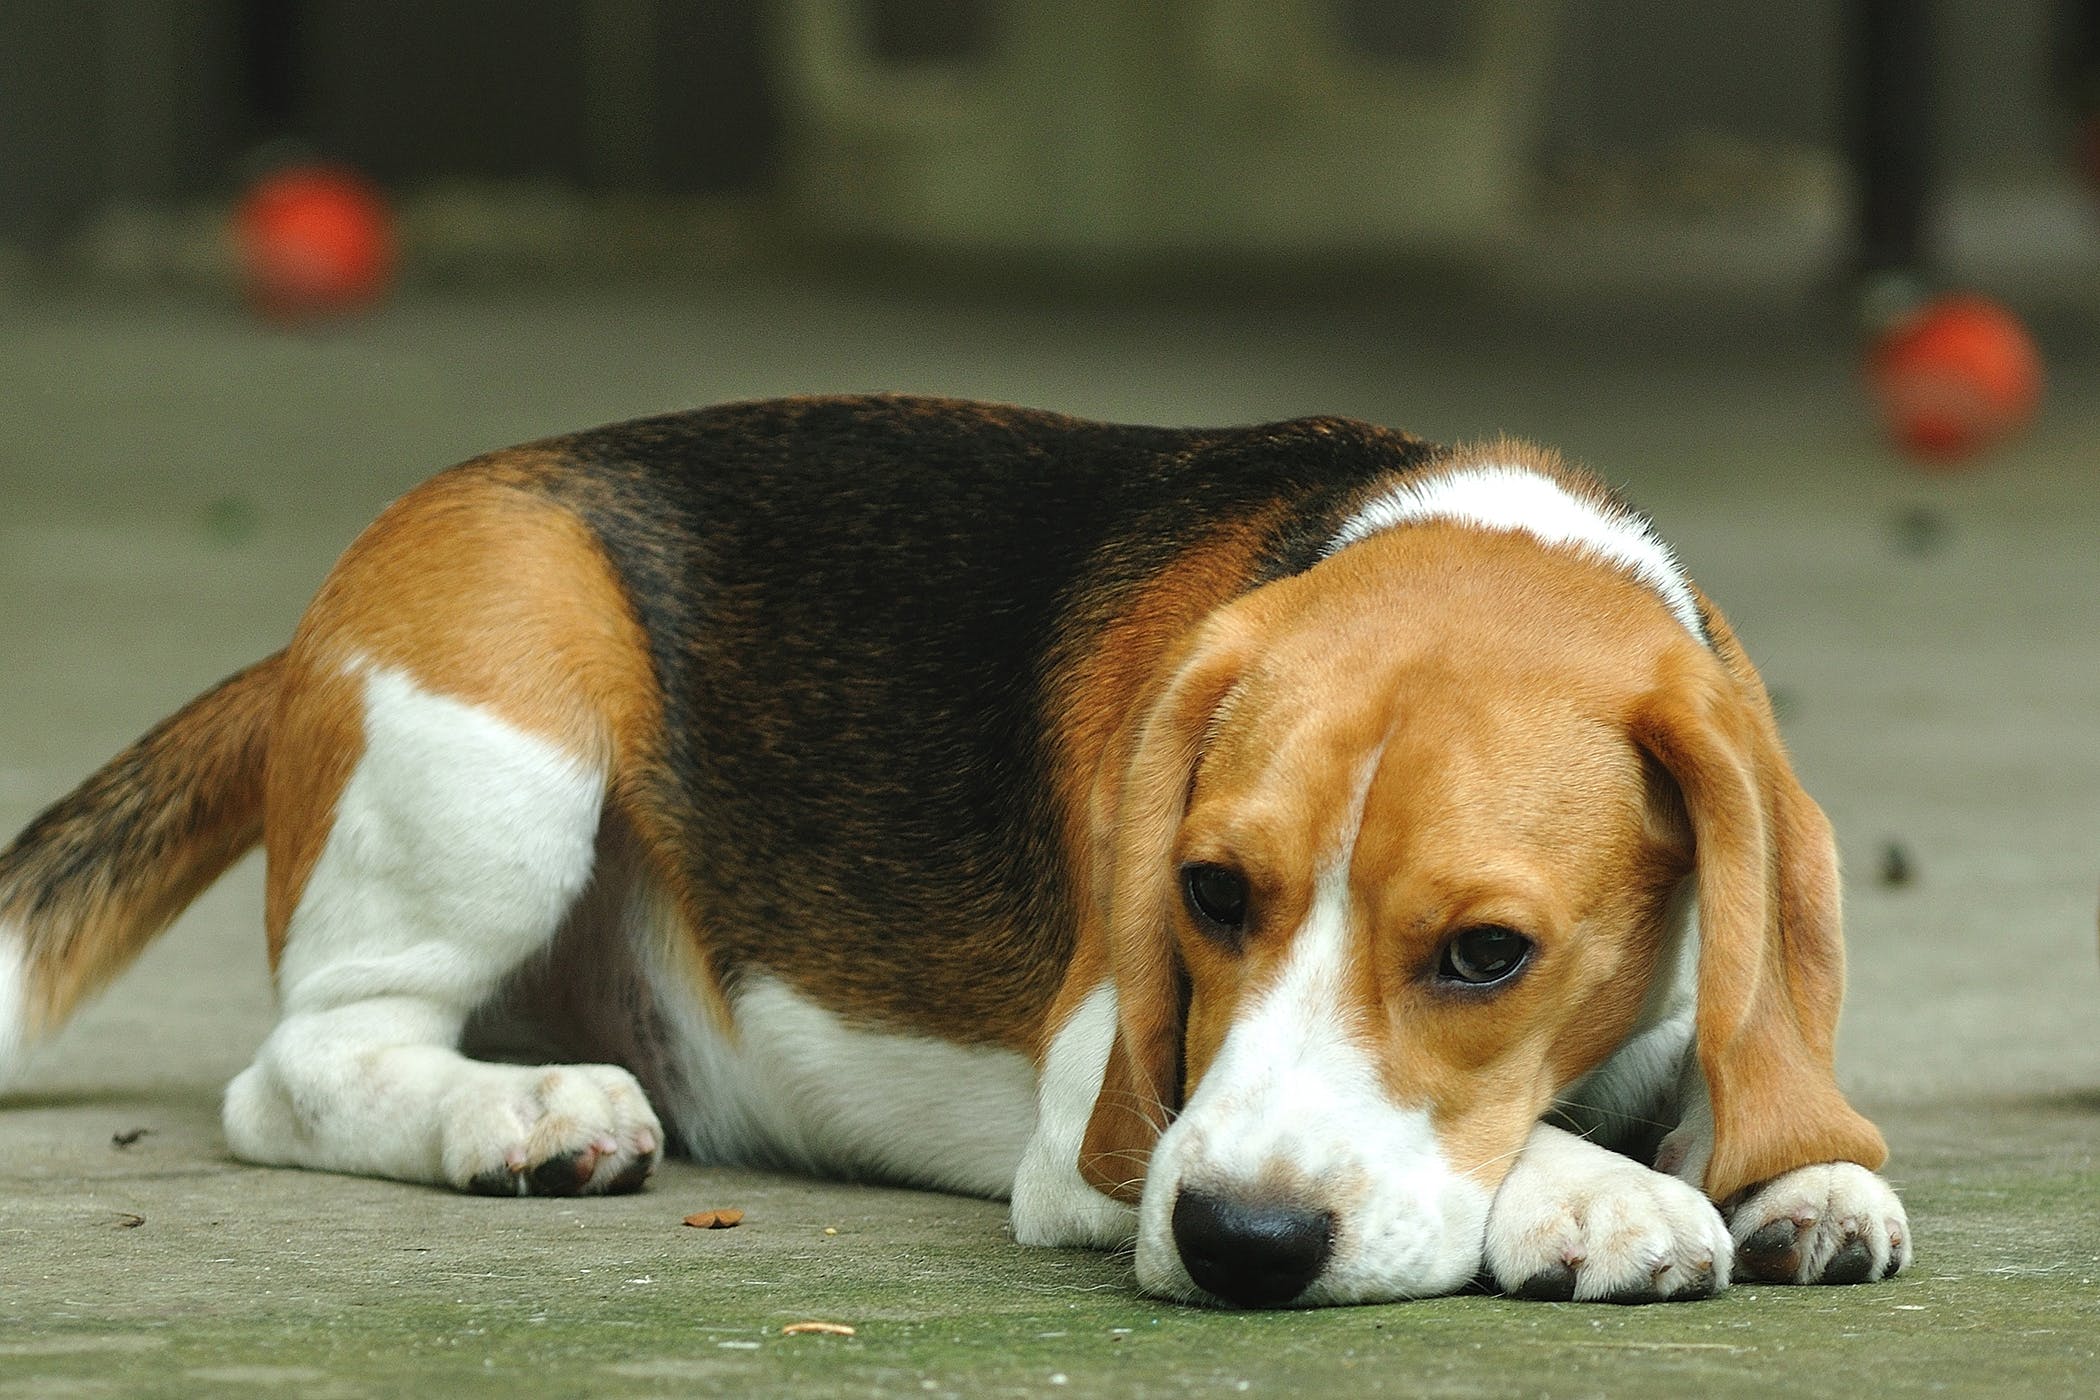 Hướng dẫn cách chữa bệnh parvo cho chó tại nhà chi tiết